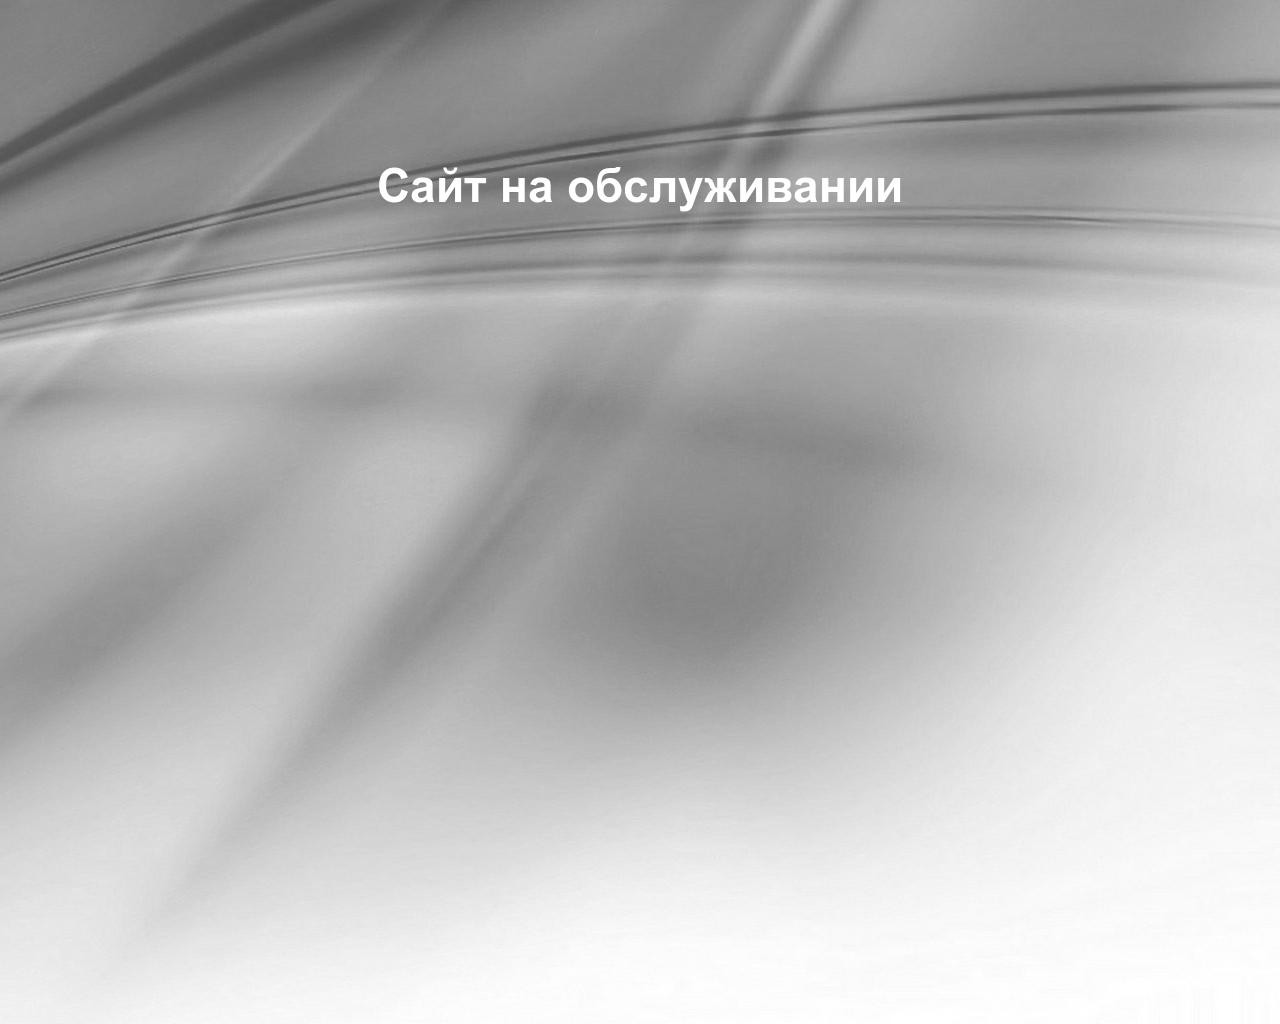 Изображение сайта vdnovik.ru в разрешении 1280x1024